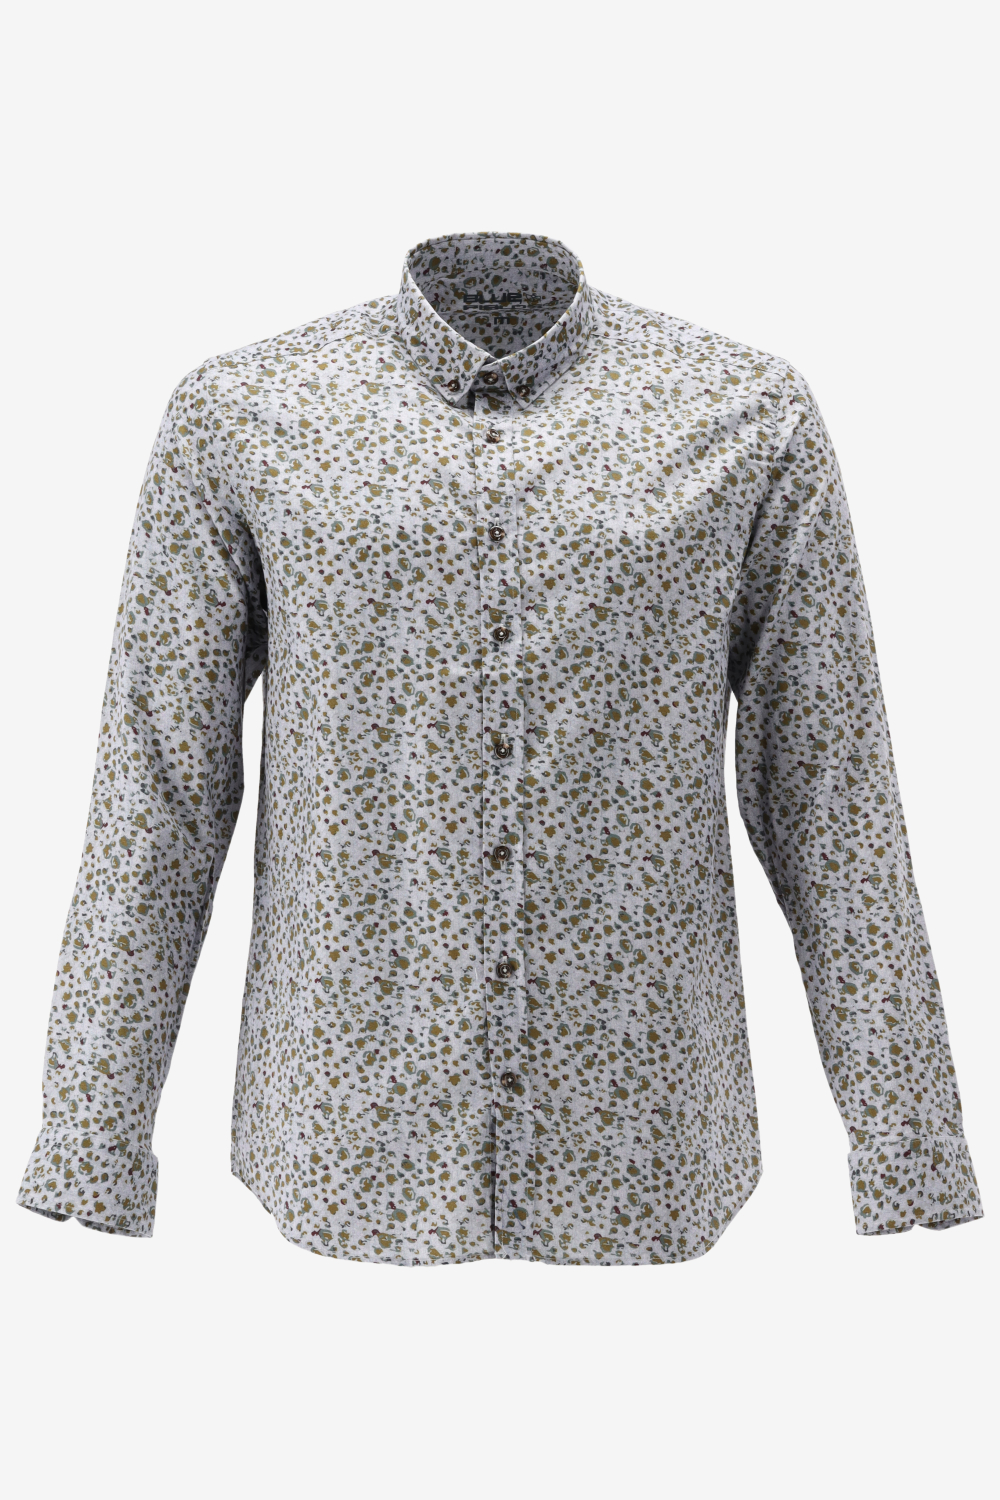 BlueFields Overhemd Overhemd Van Katoen Met Print 21442008 1883 Mannen Maat - L